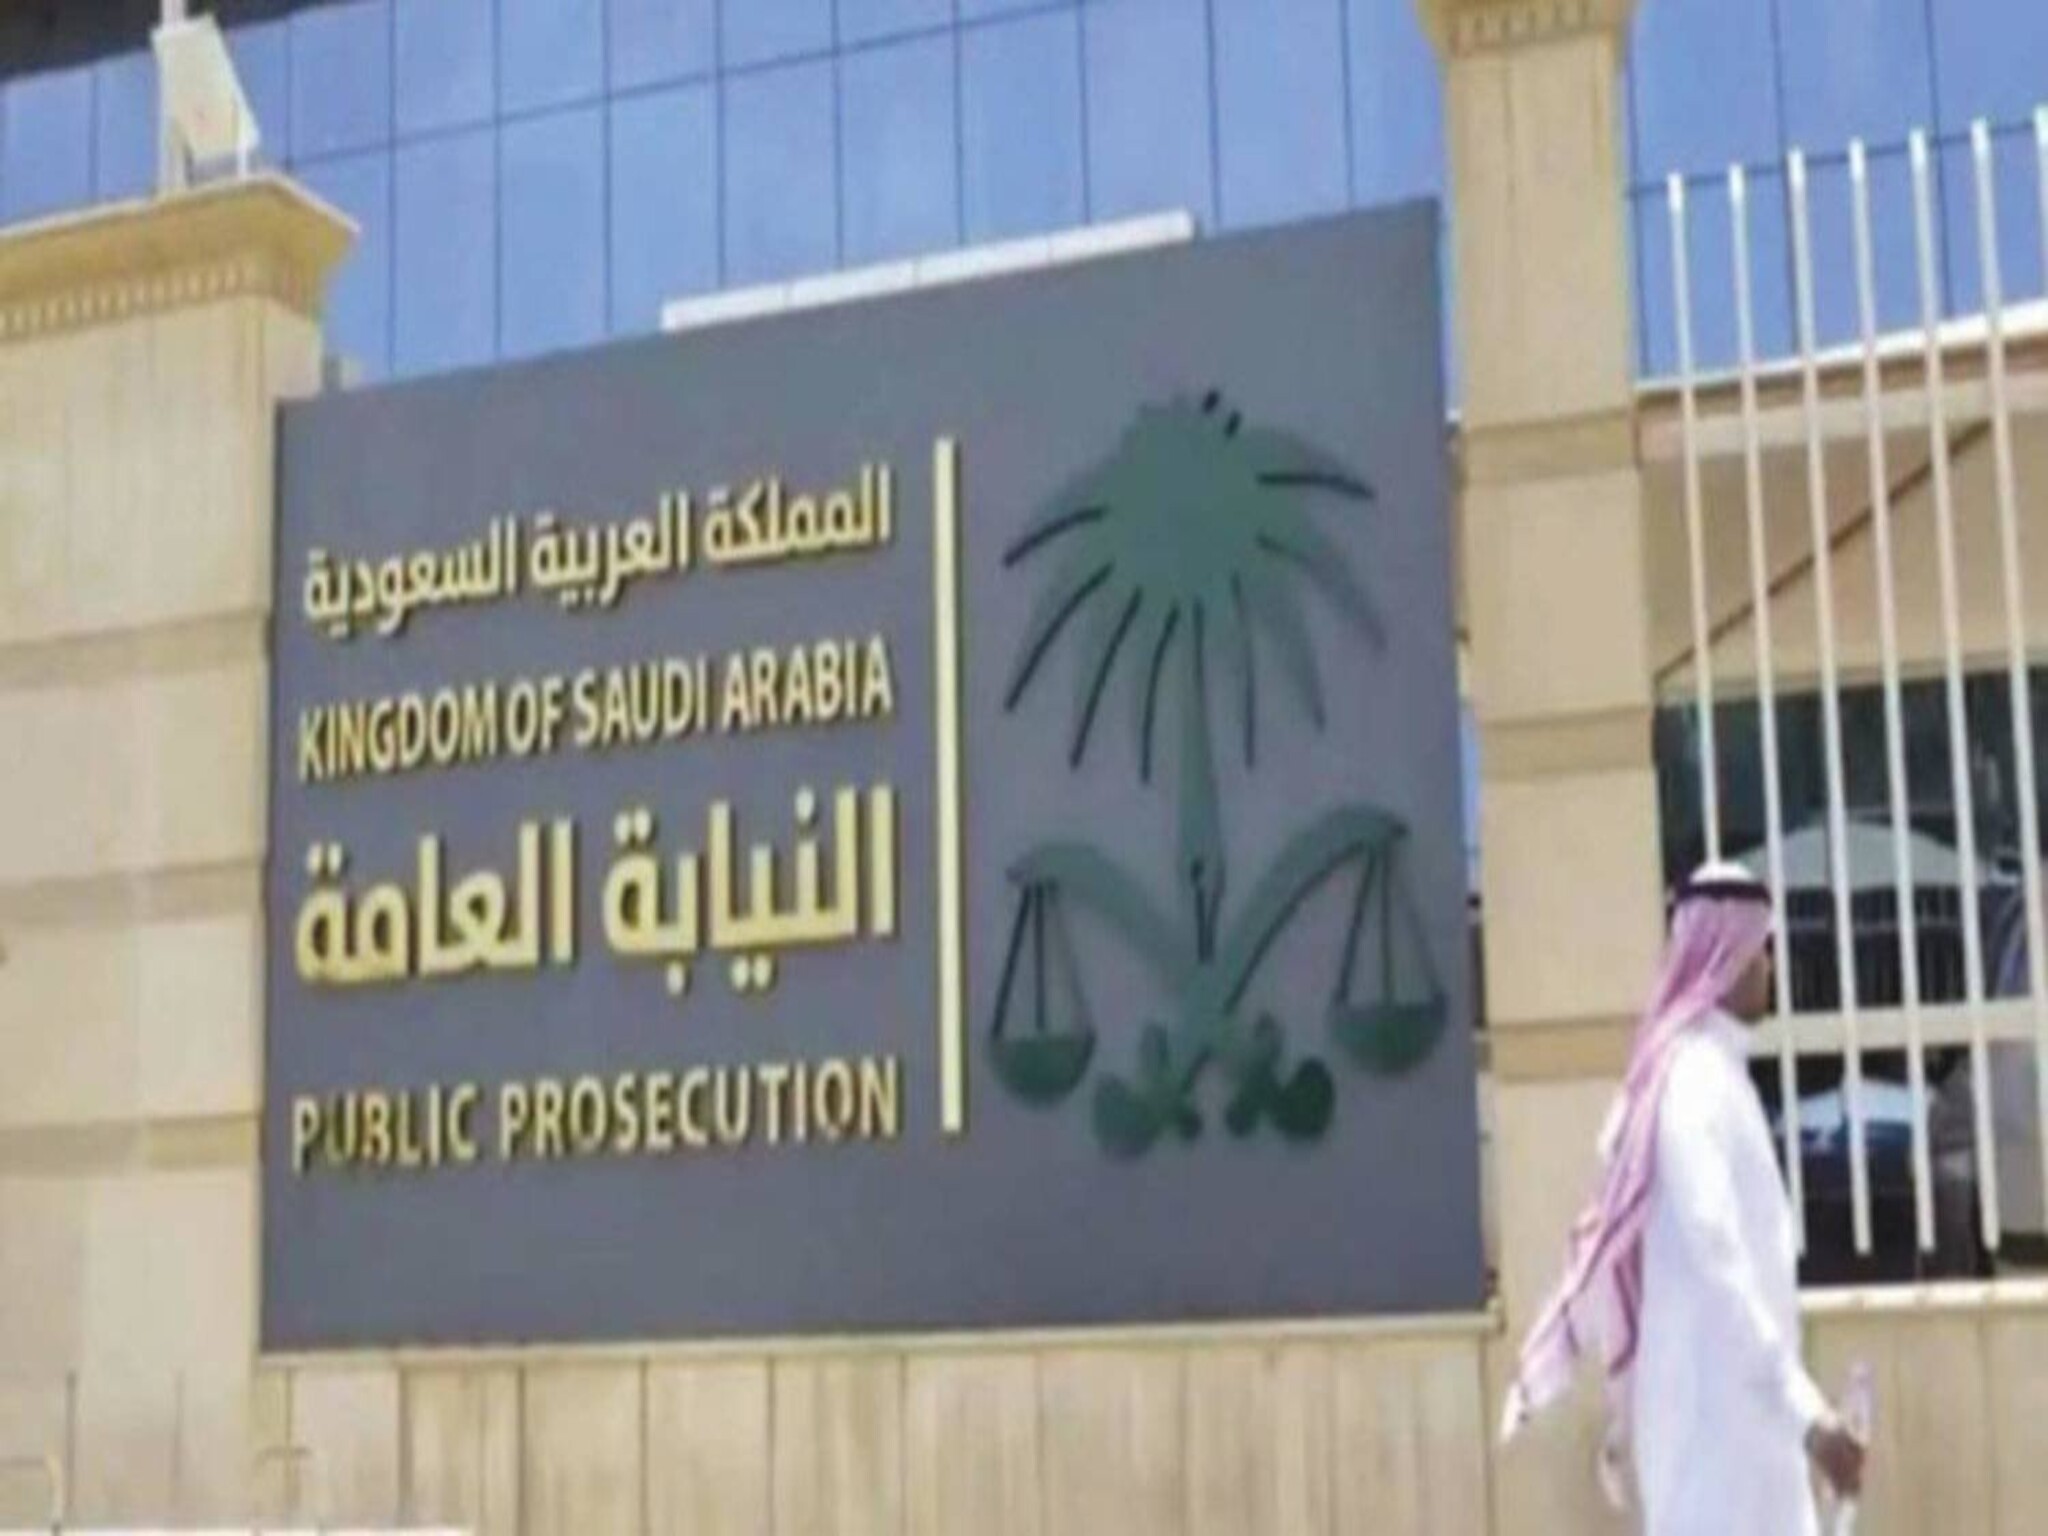 مجلس النيابة العامة السعودية يعلن رسميًا إنشاء "نيابة الملكية الفكرية" 1445هـ